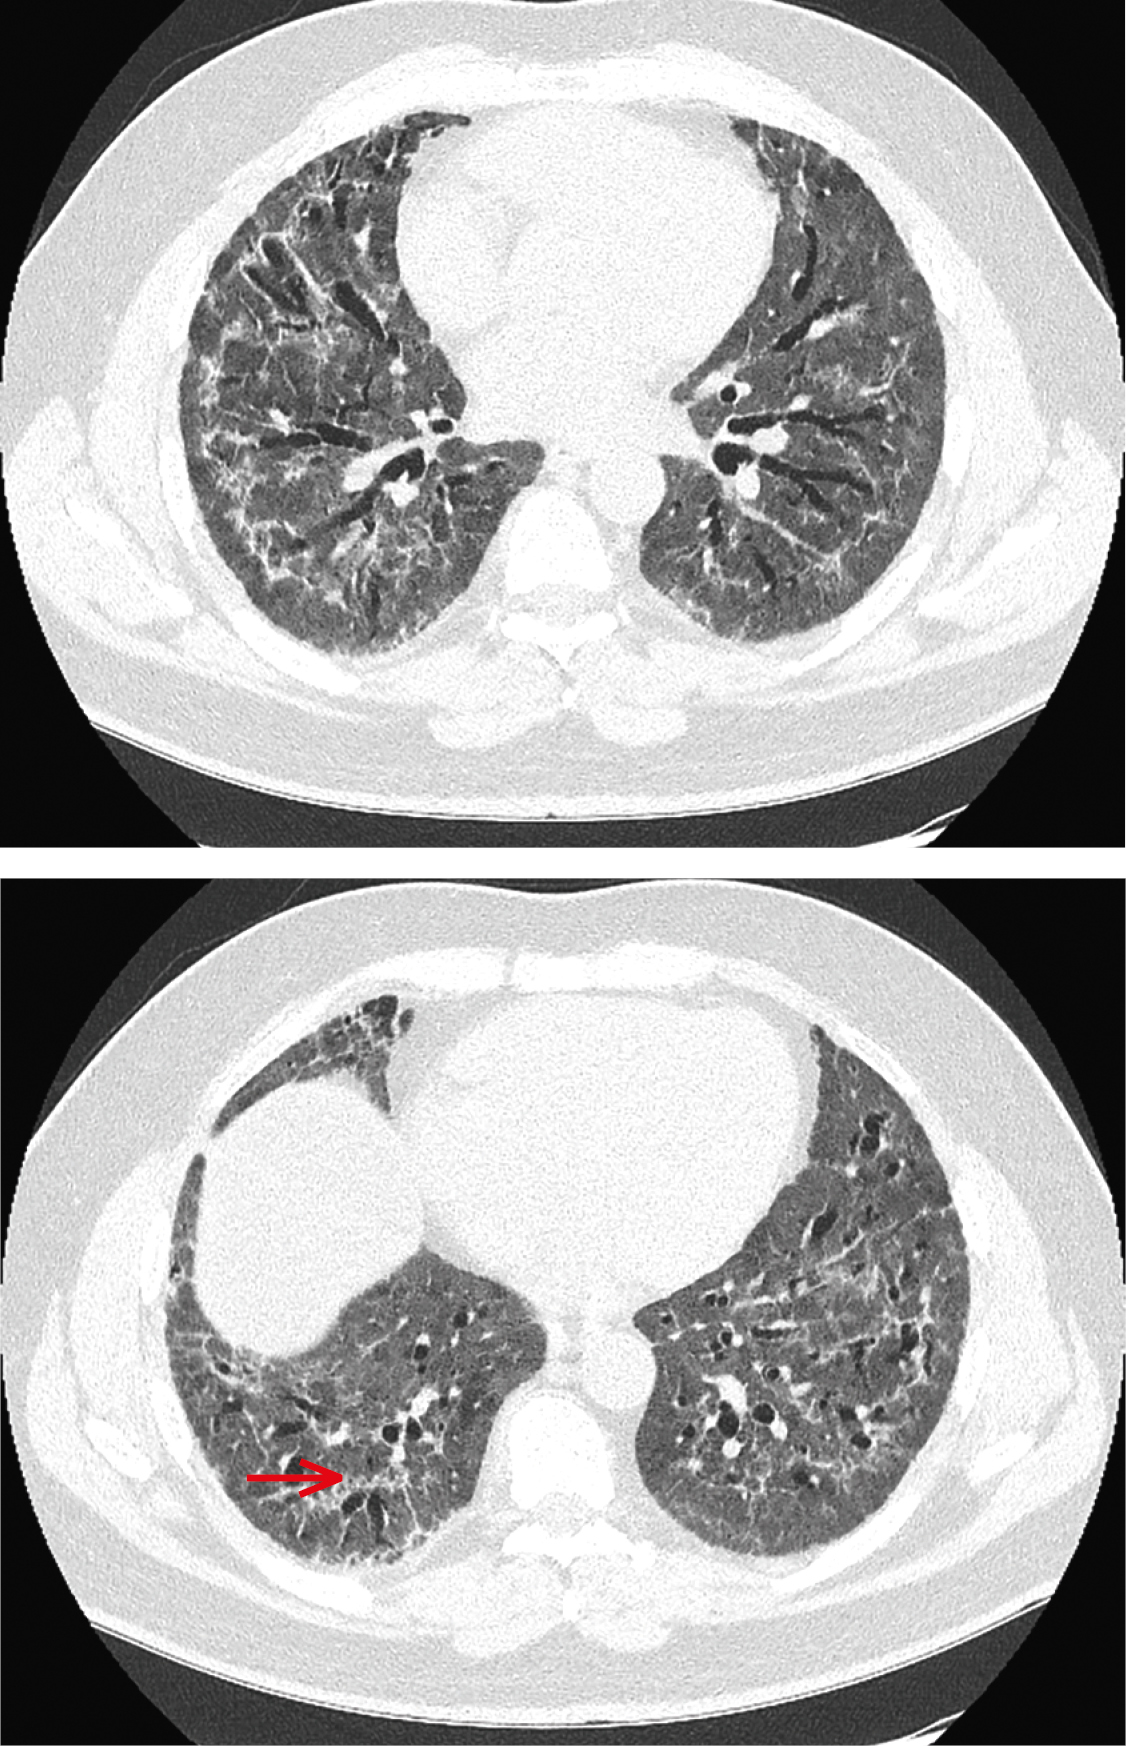 Комп’ютерна томографія грудної клітки на 73-й день симптомів. Обидві легені повністю зайняті ураженнями типу молочного скла, на які накладаються, переважно периферично (також субплеврально біля основи